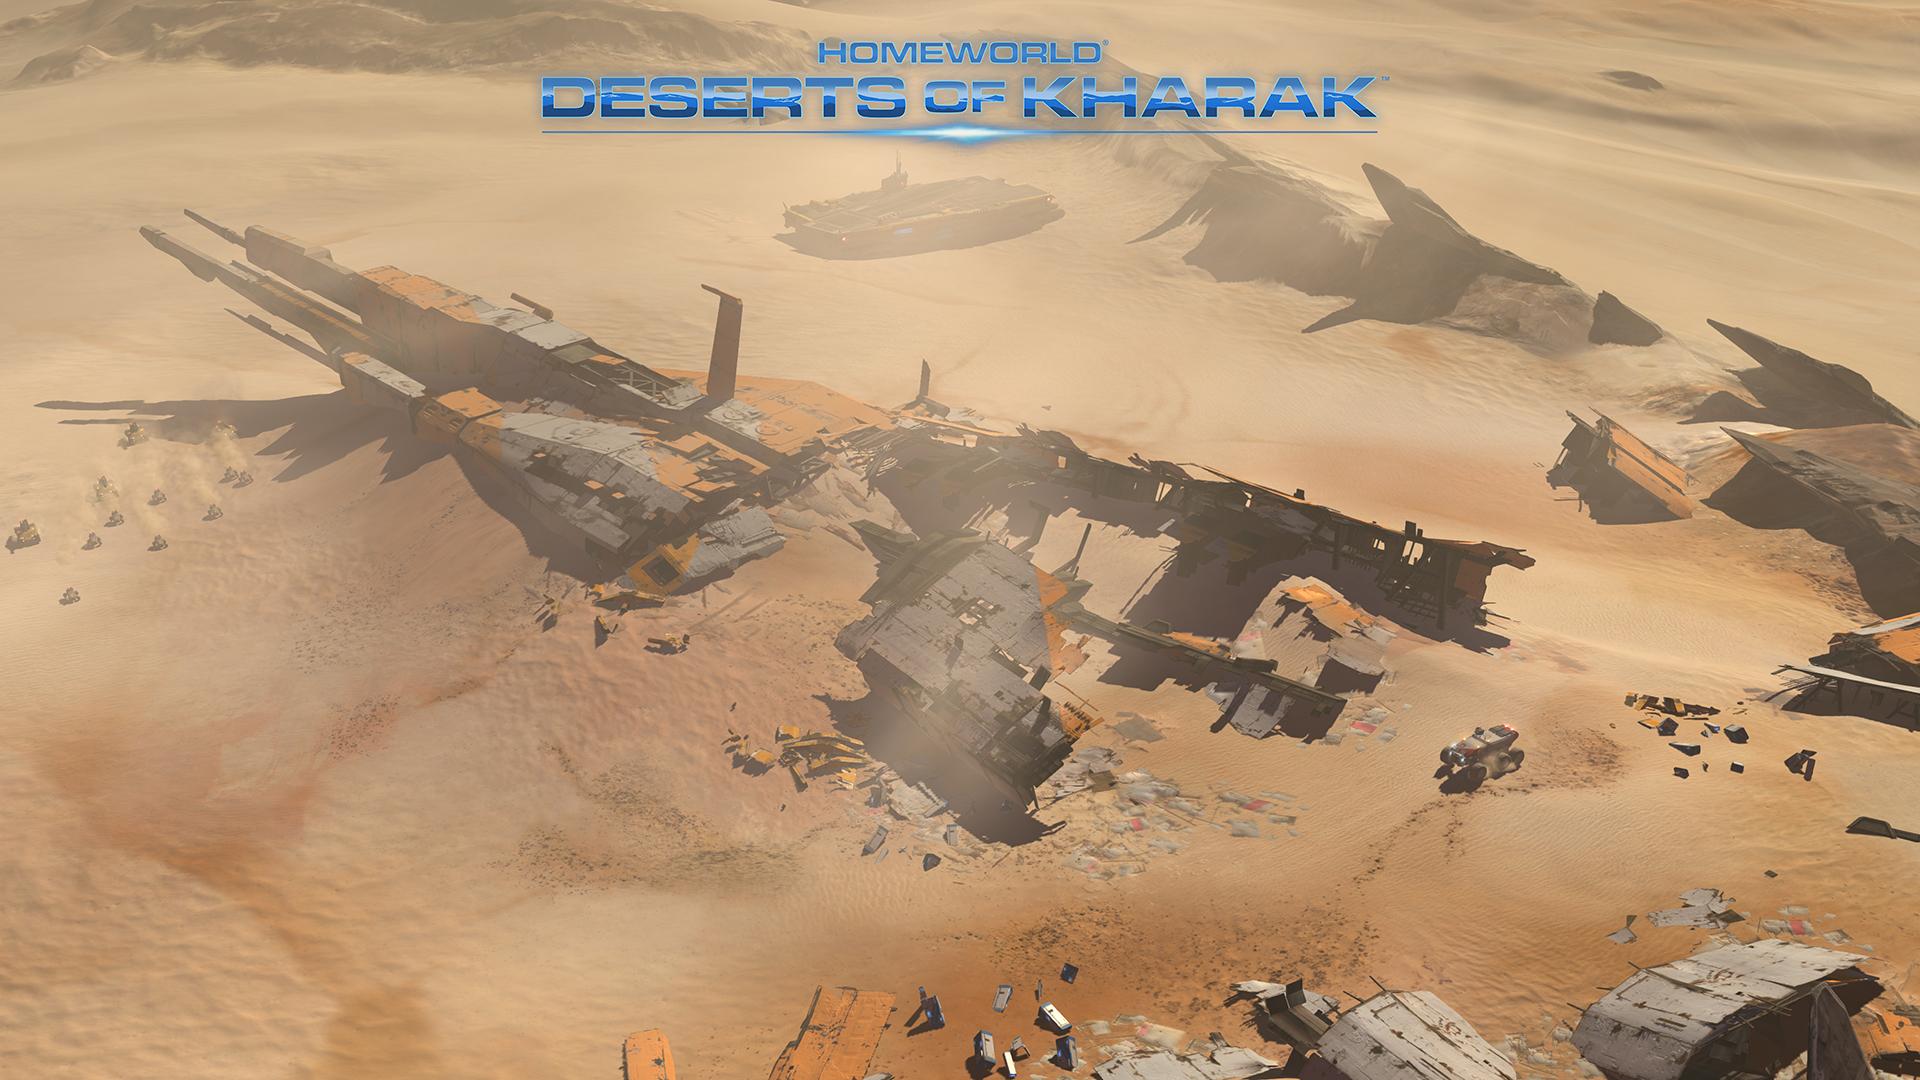 Screenshot №3 from game Homeworld: Deserts of Kharak